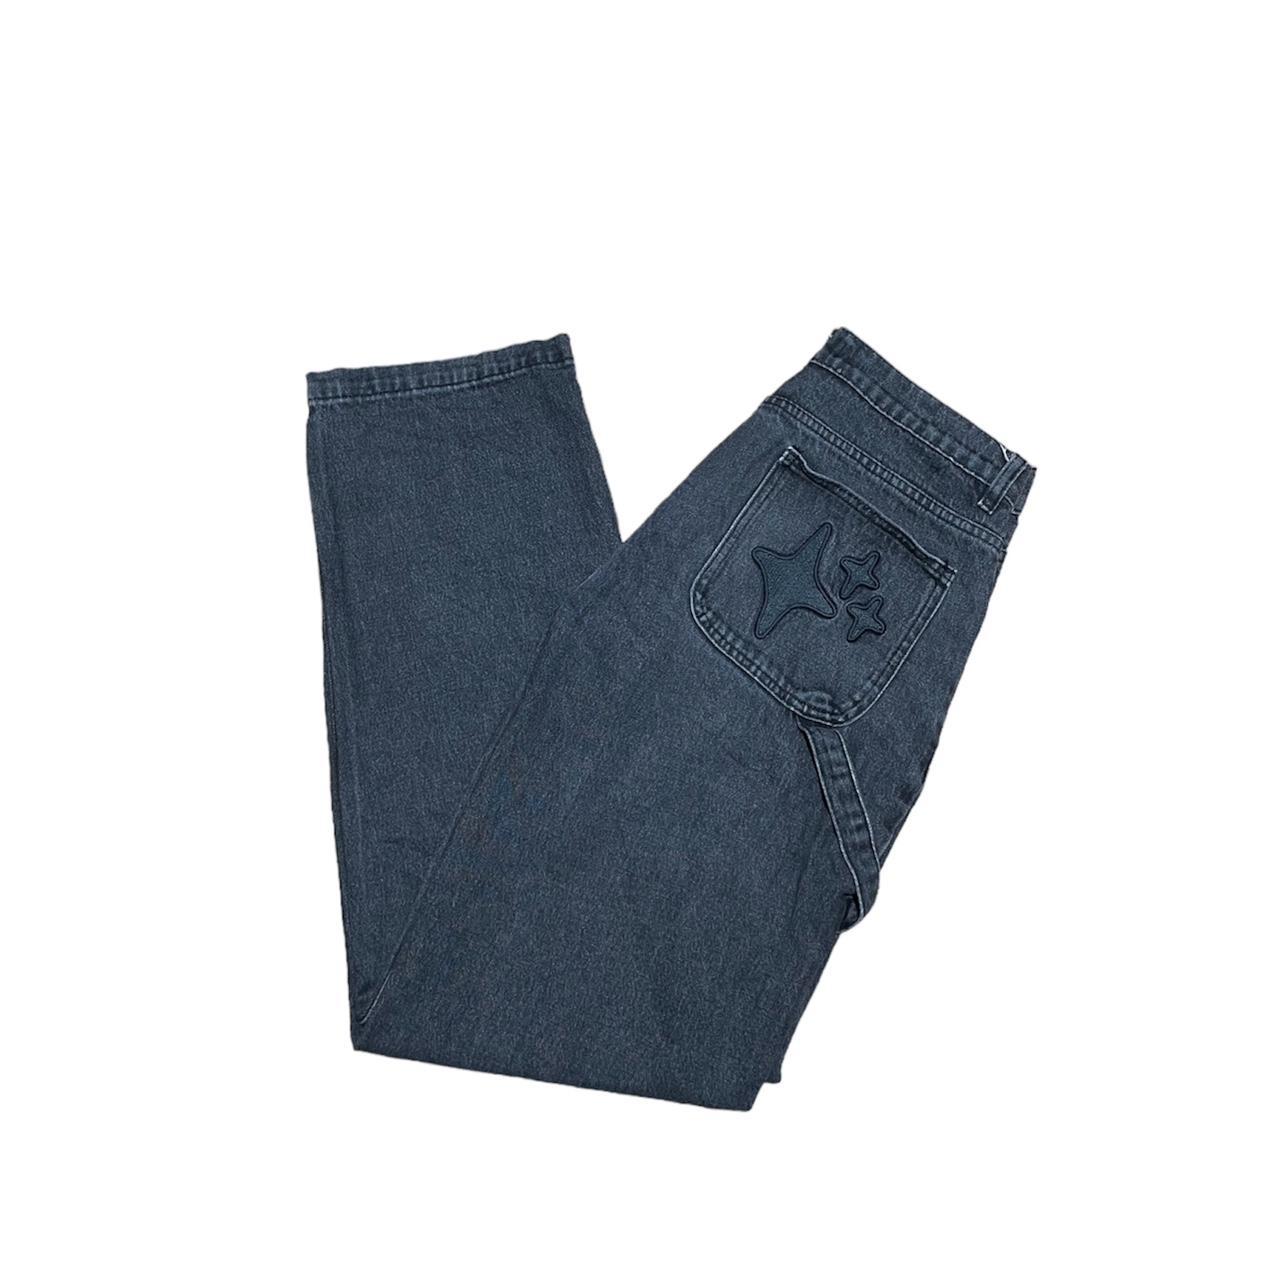 Black Broken Planet Market jeans 30x30 Used-great... - Depop